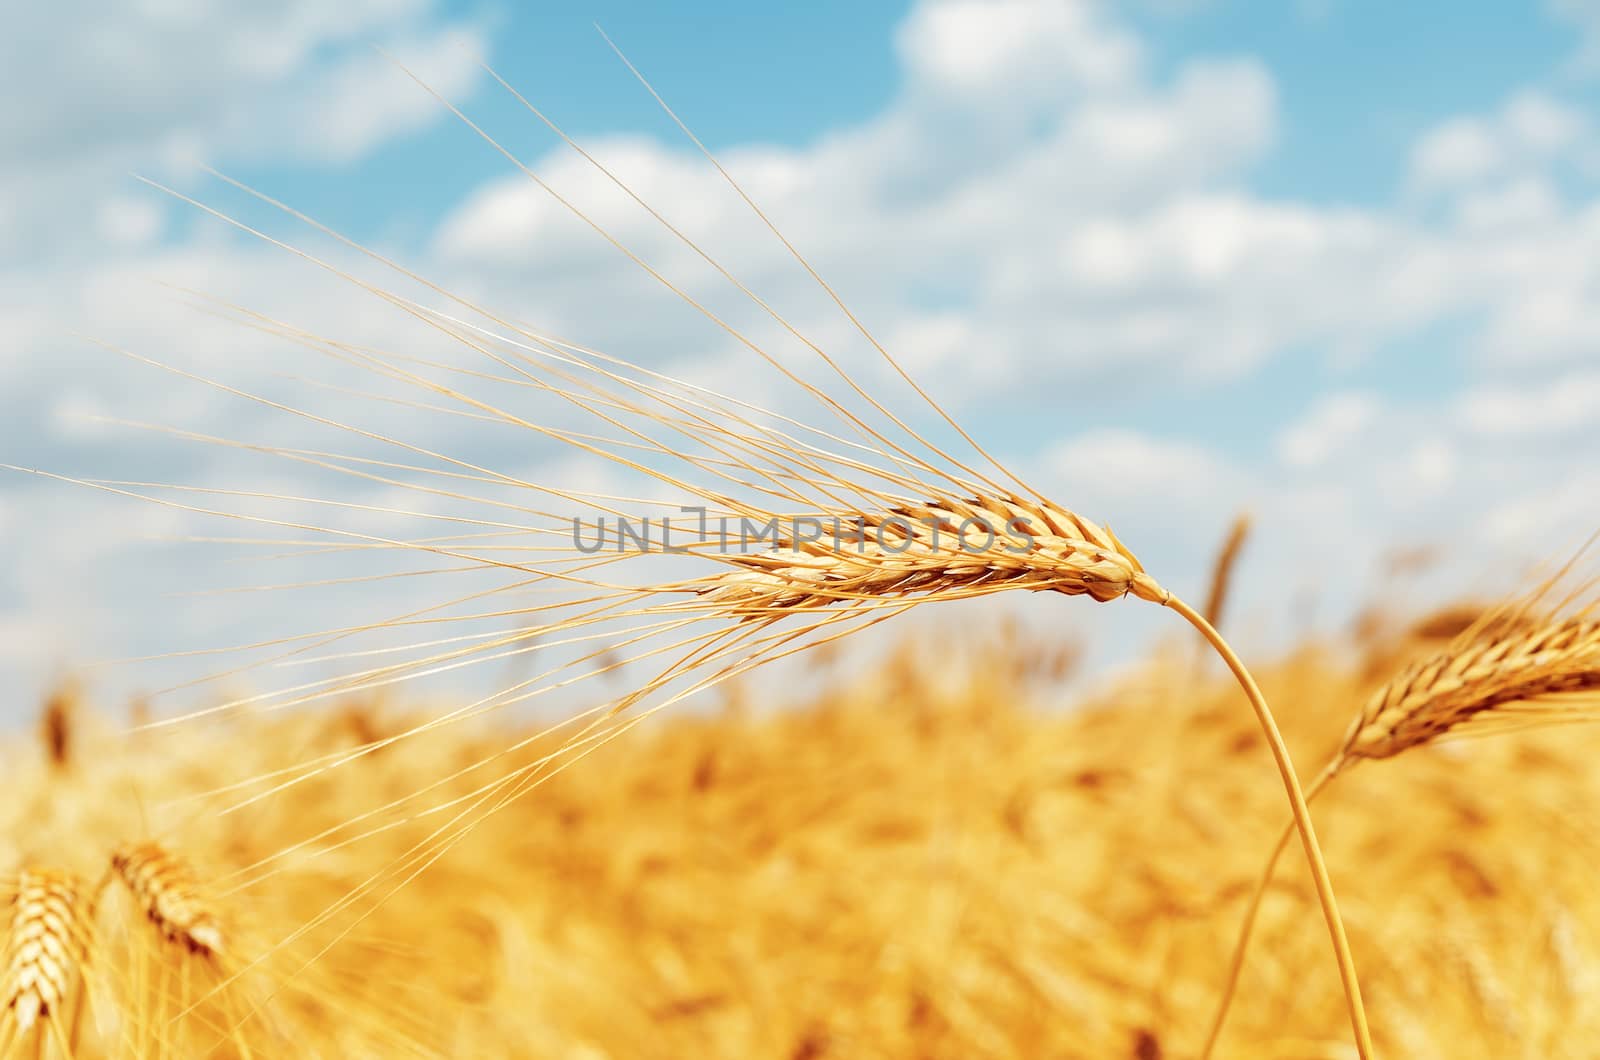 ripe ear of wheat on field